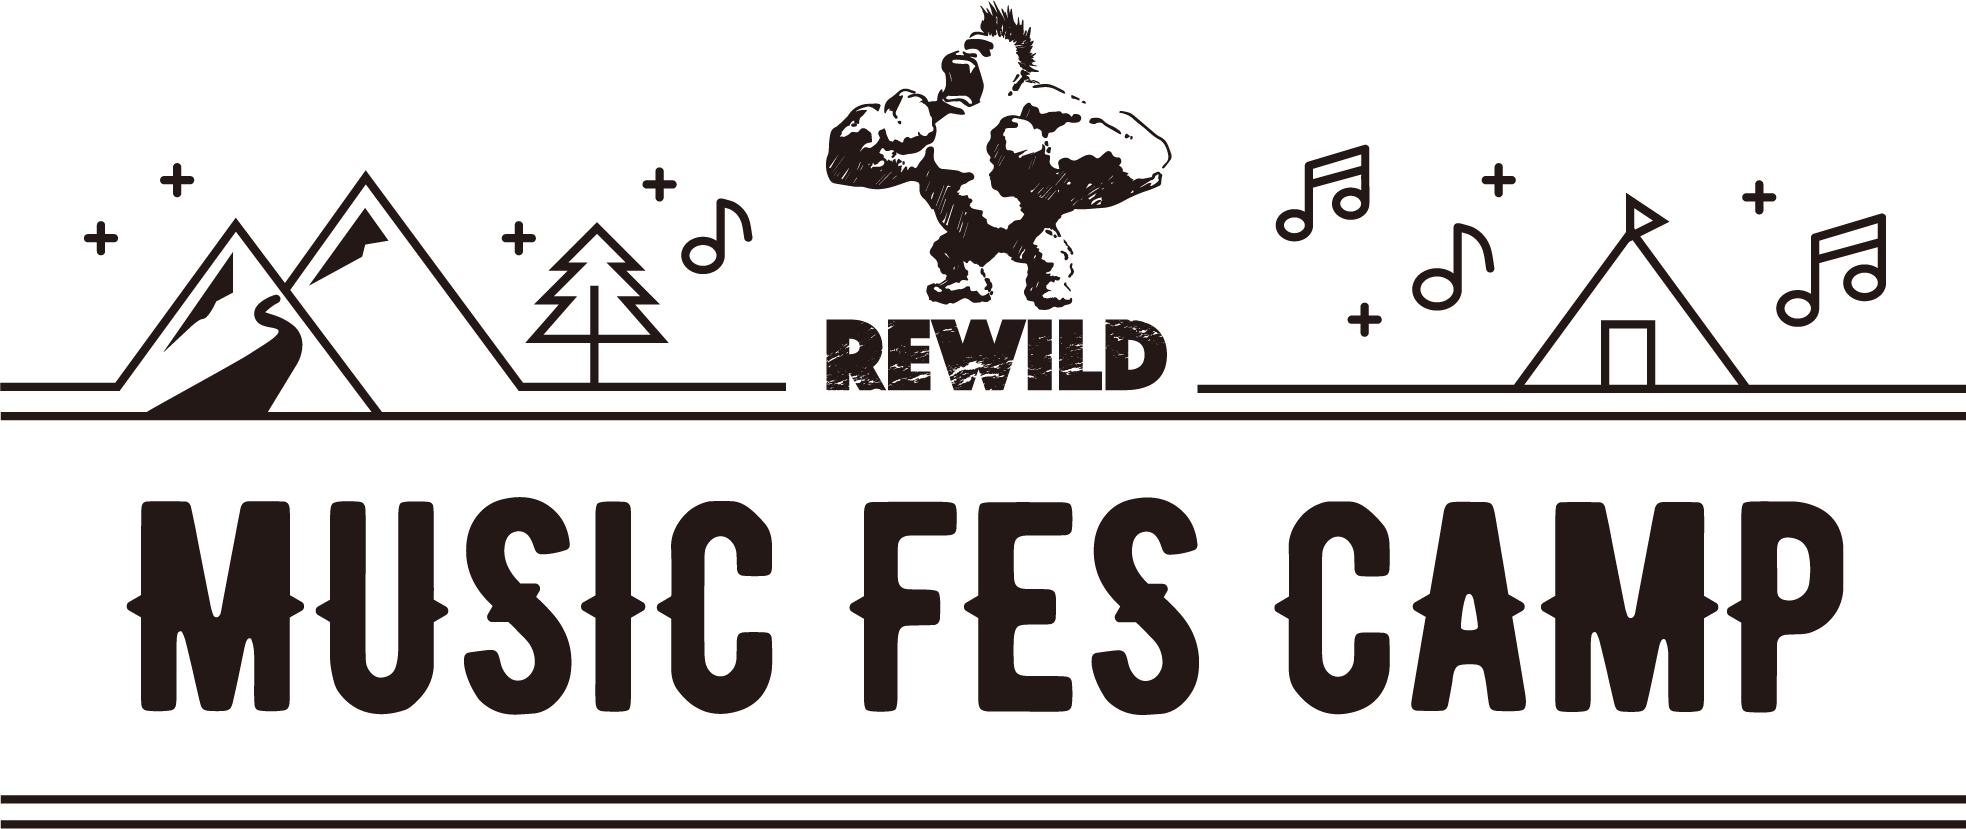 アクセス リワイルドミュージックフェスキャンプ Rewild Music Fes Camp 千葉 勝浦で音楽キャンプ グランピング